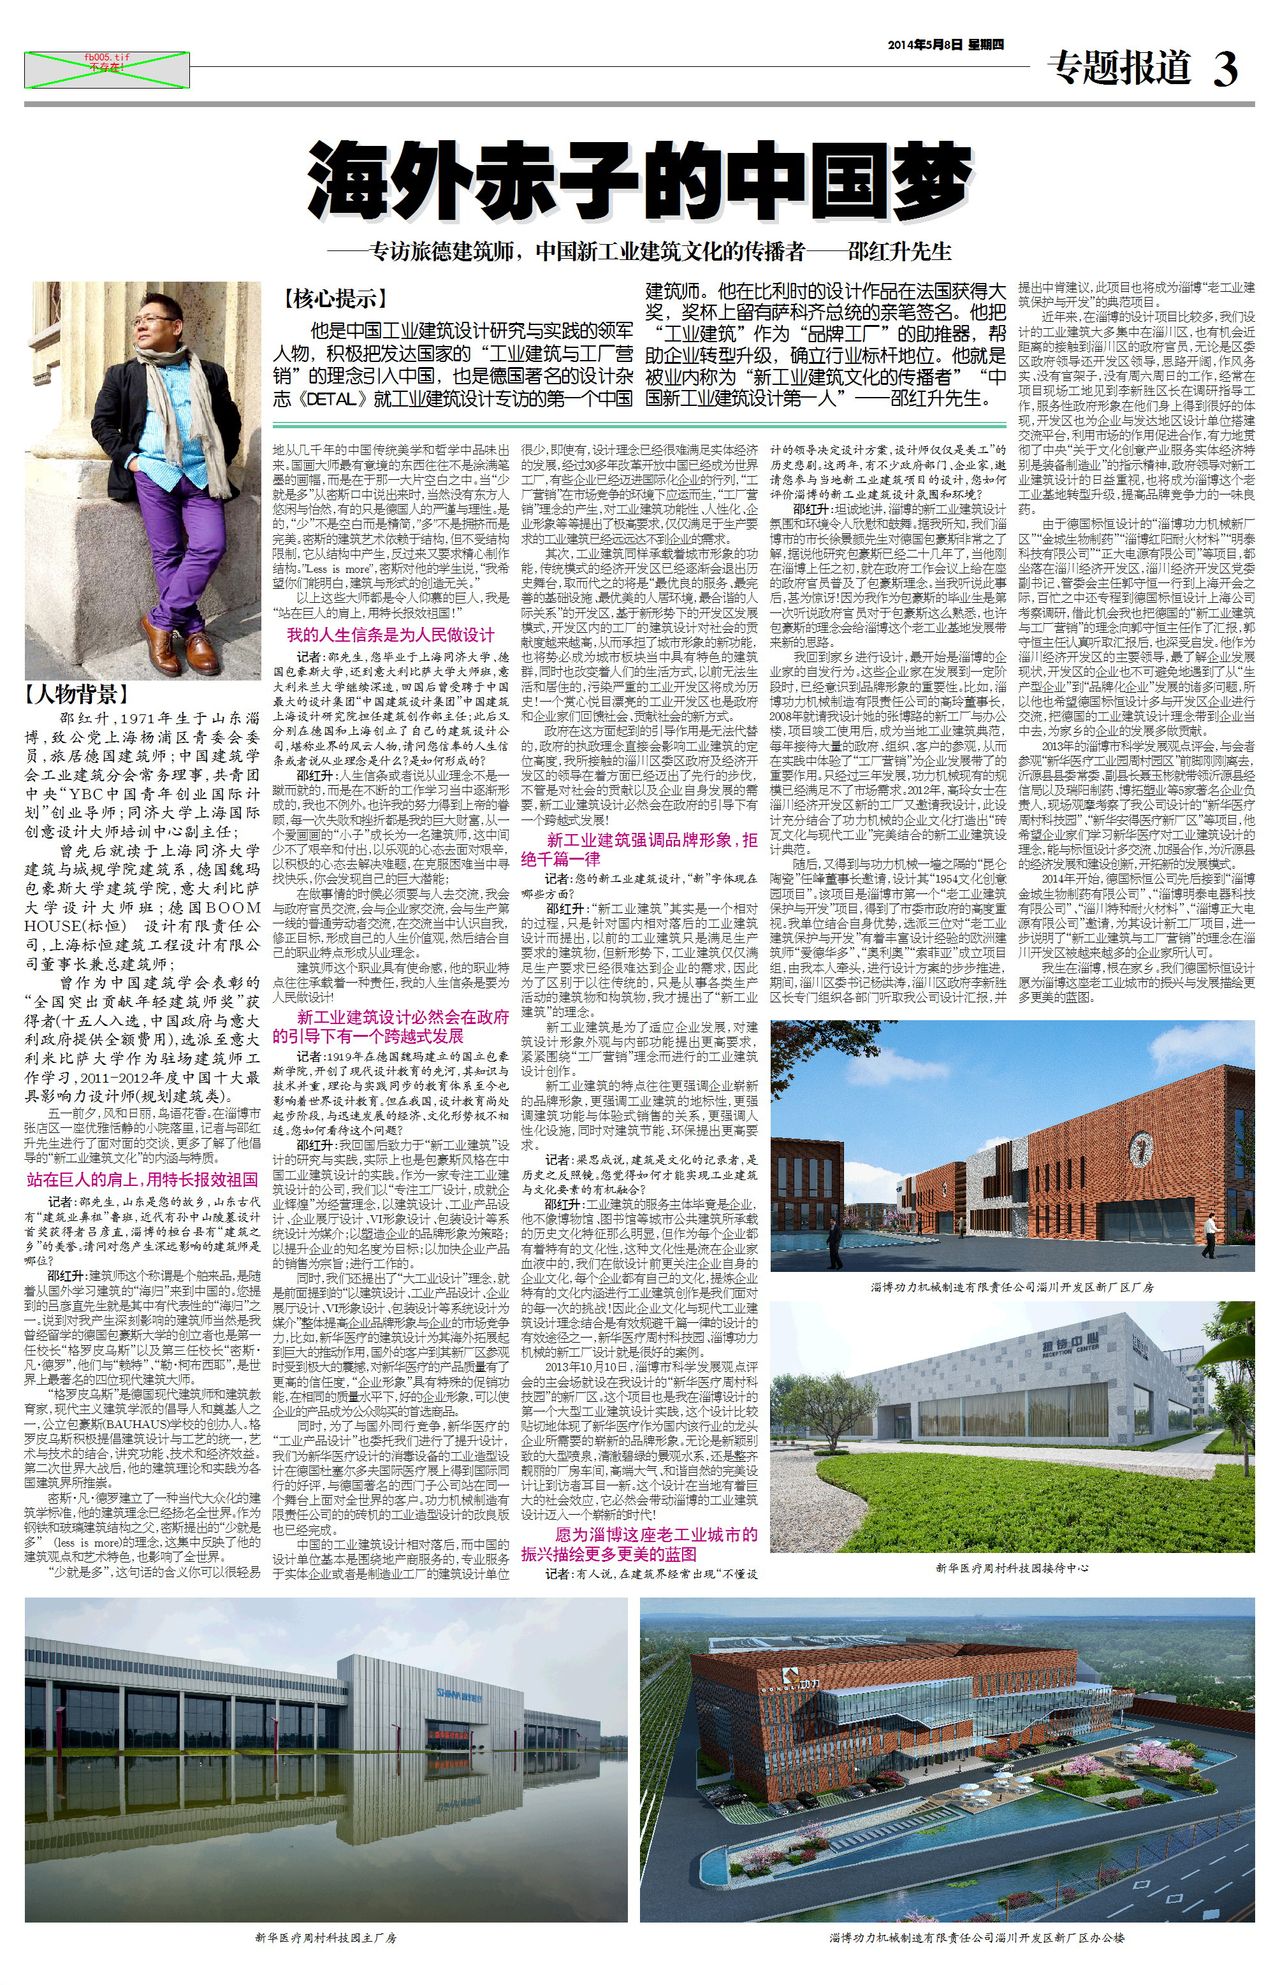 《淄博日報》2014年5月8日第三版整版報導